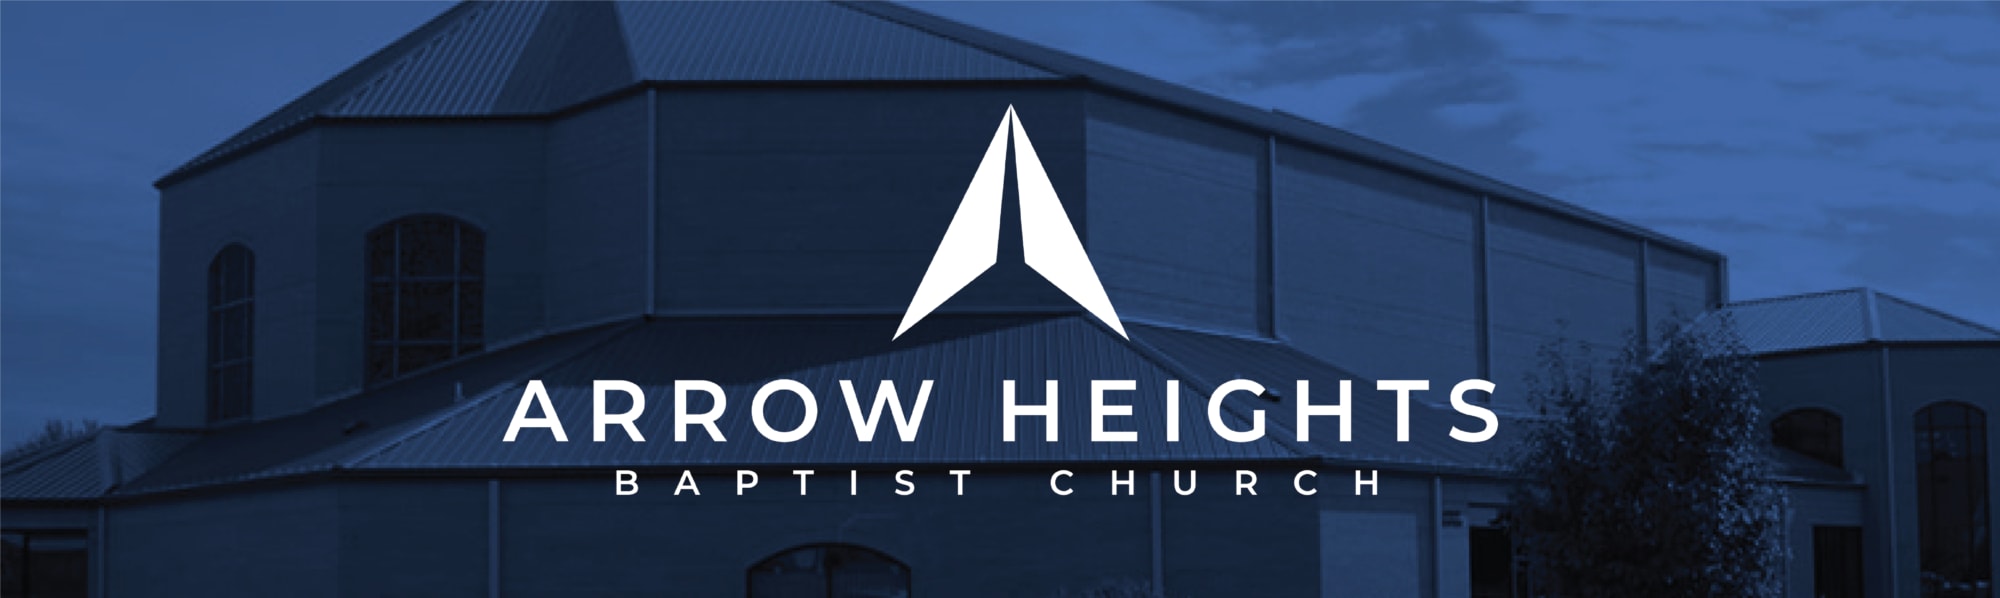 Arrow Heights Baptist Church